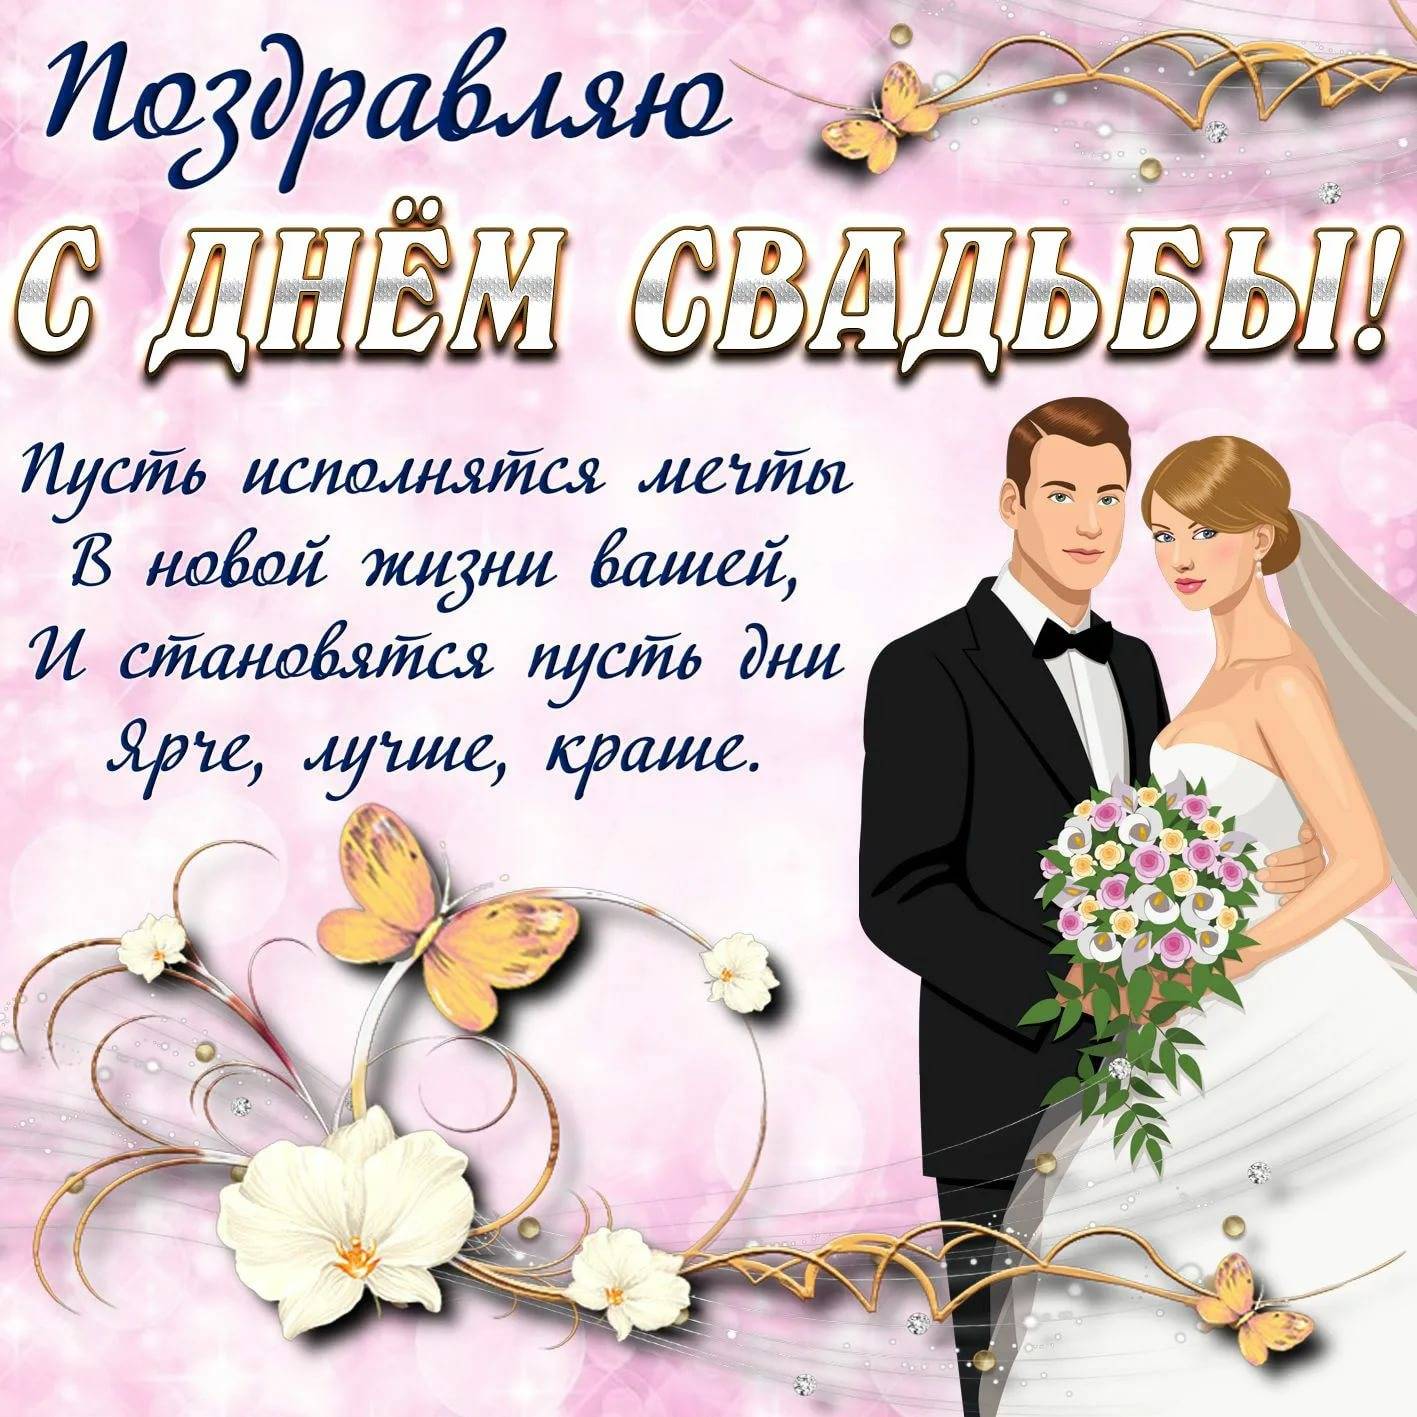 Поздравления и пожелания на свадебное торжество своими словами: инструкция +видео и фото